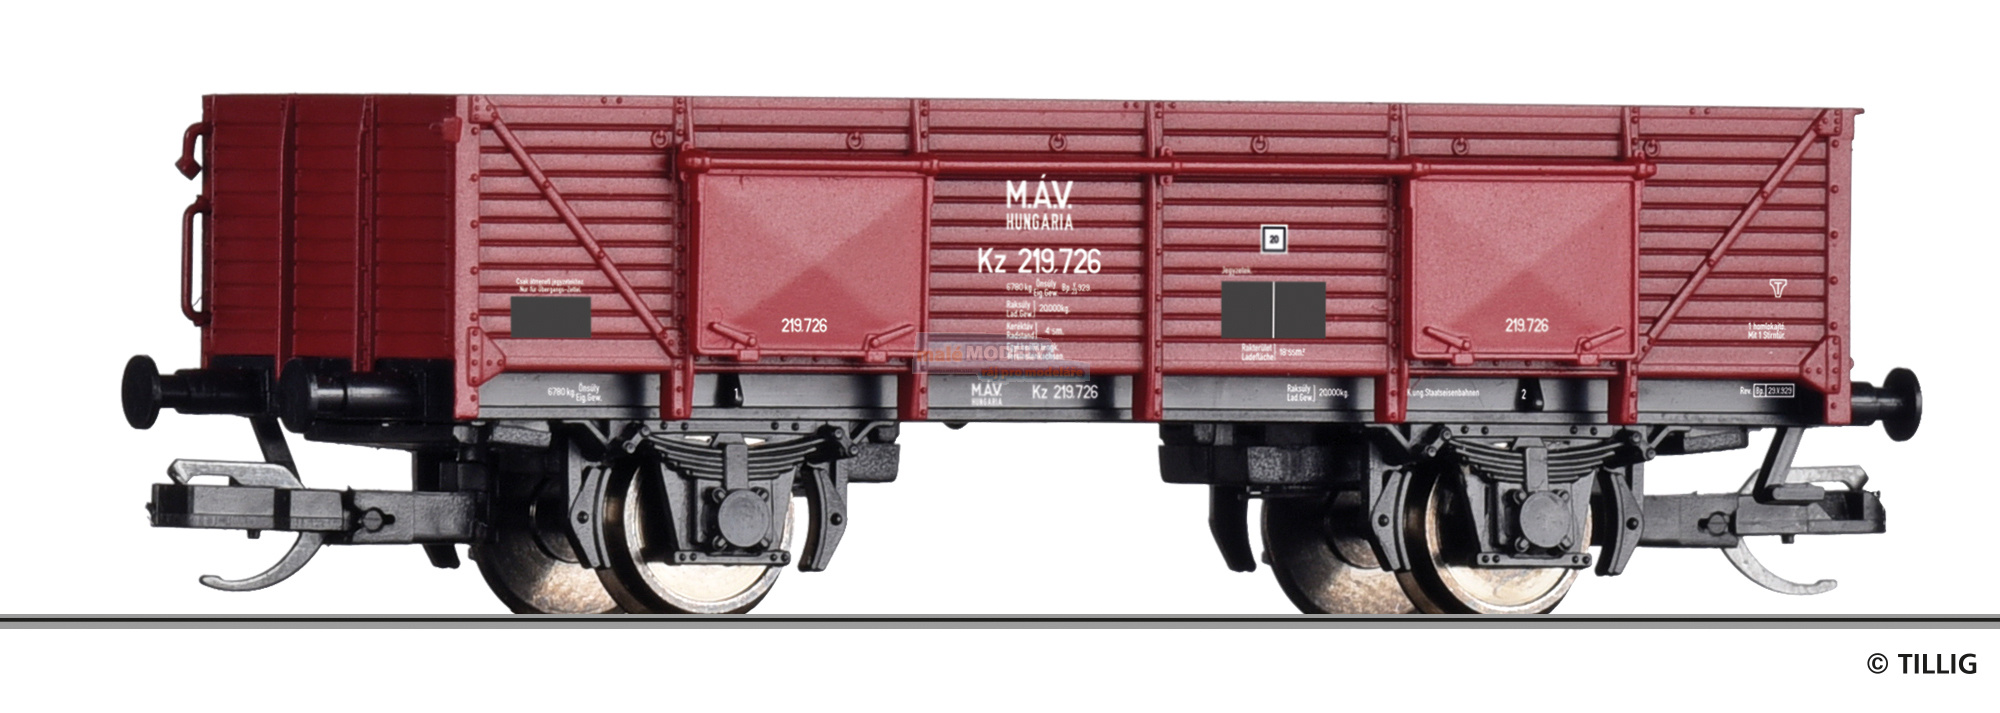 Offener Güterwagen Kz der MAV, Ep. II